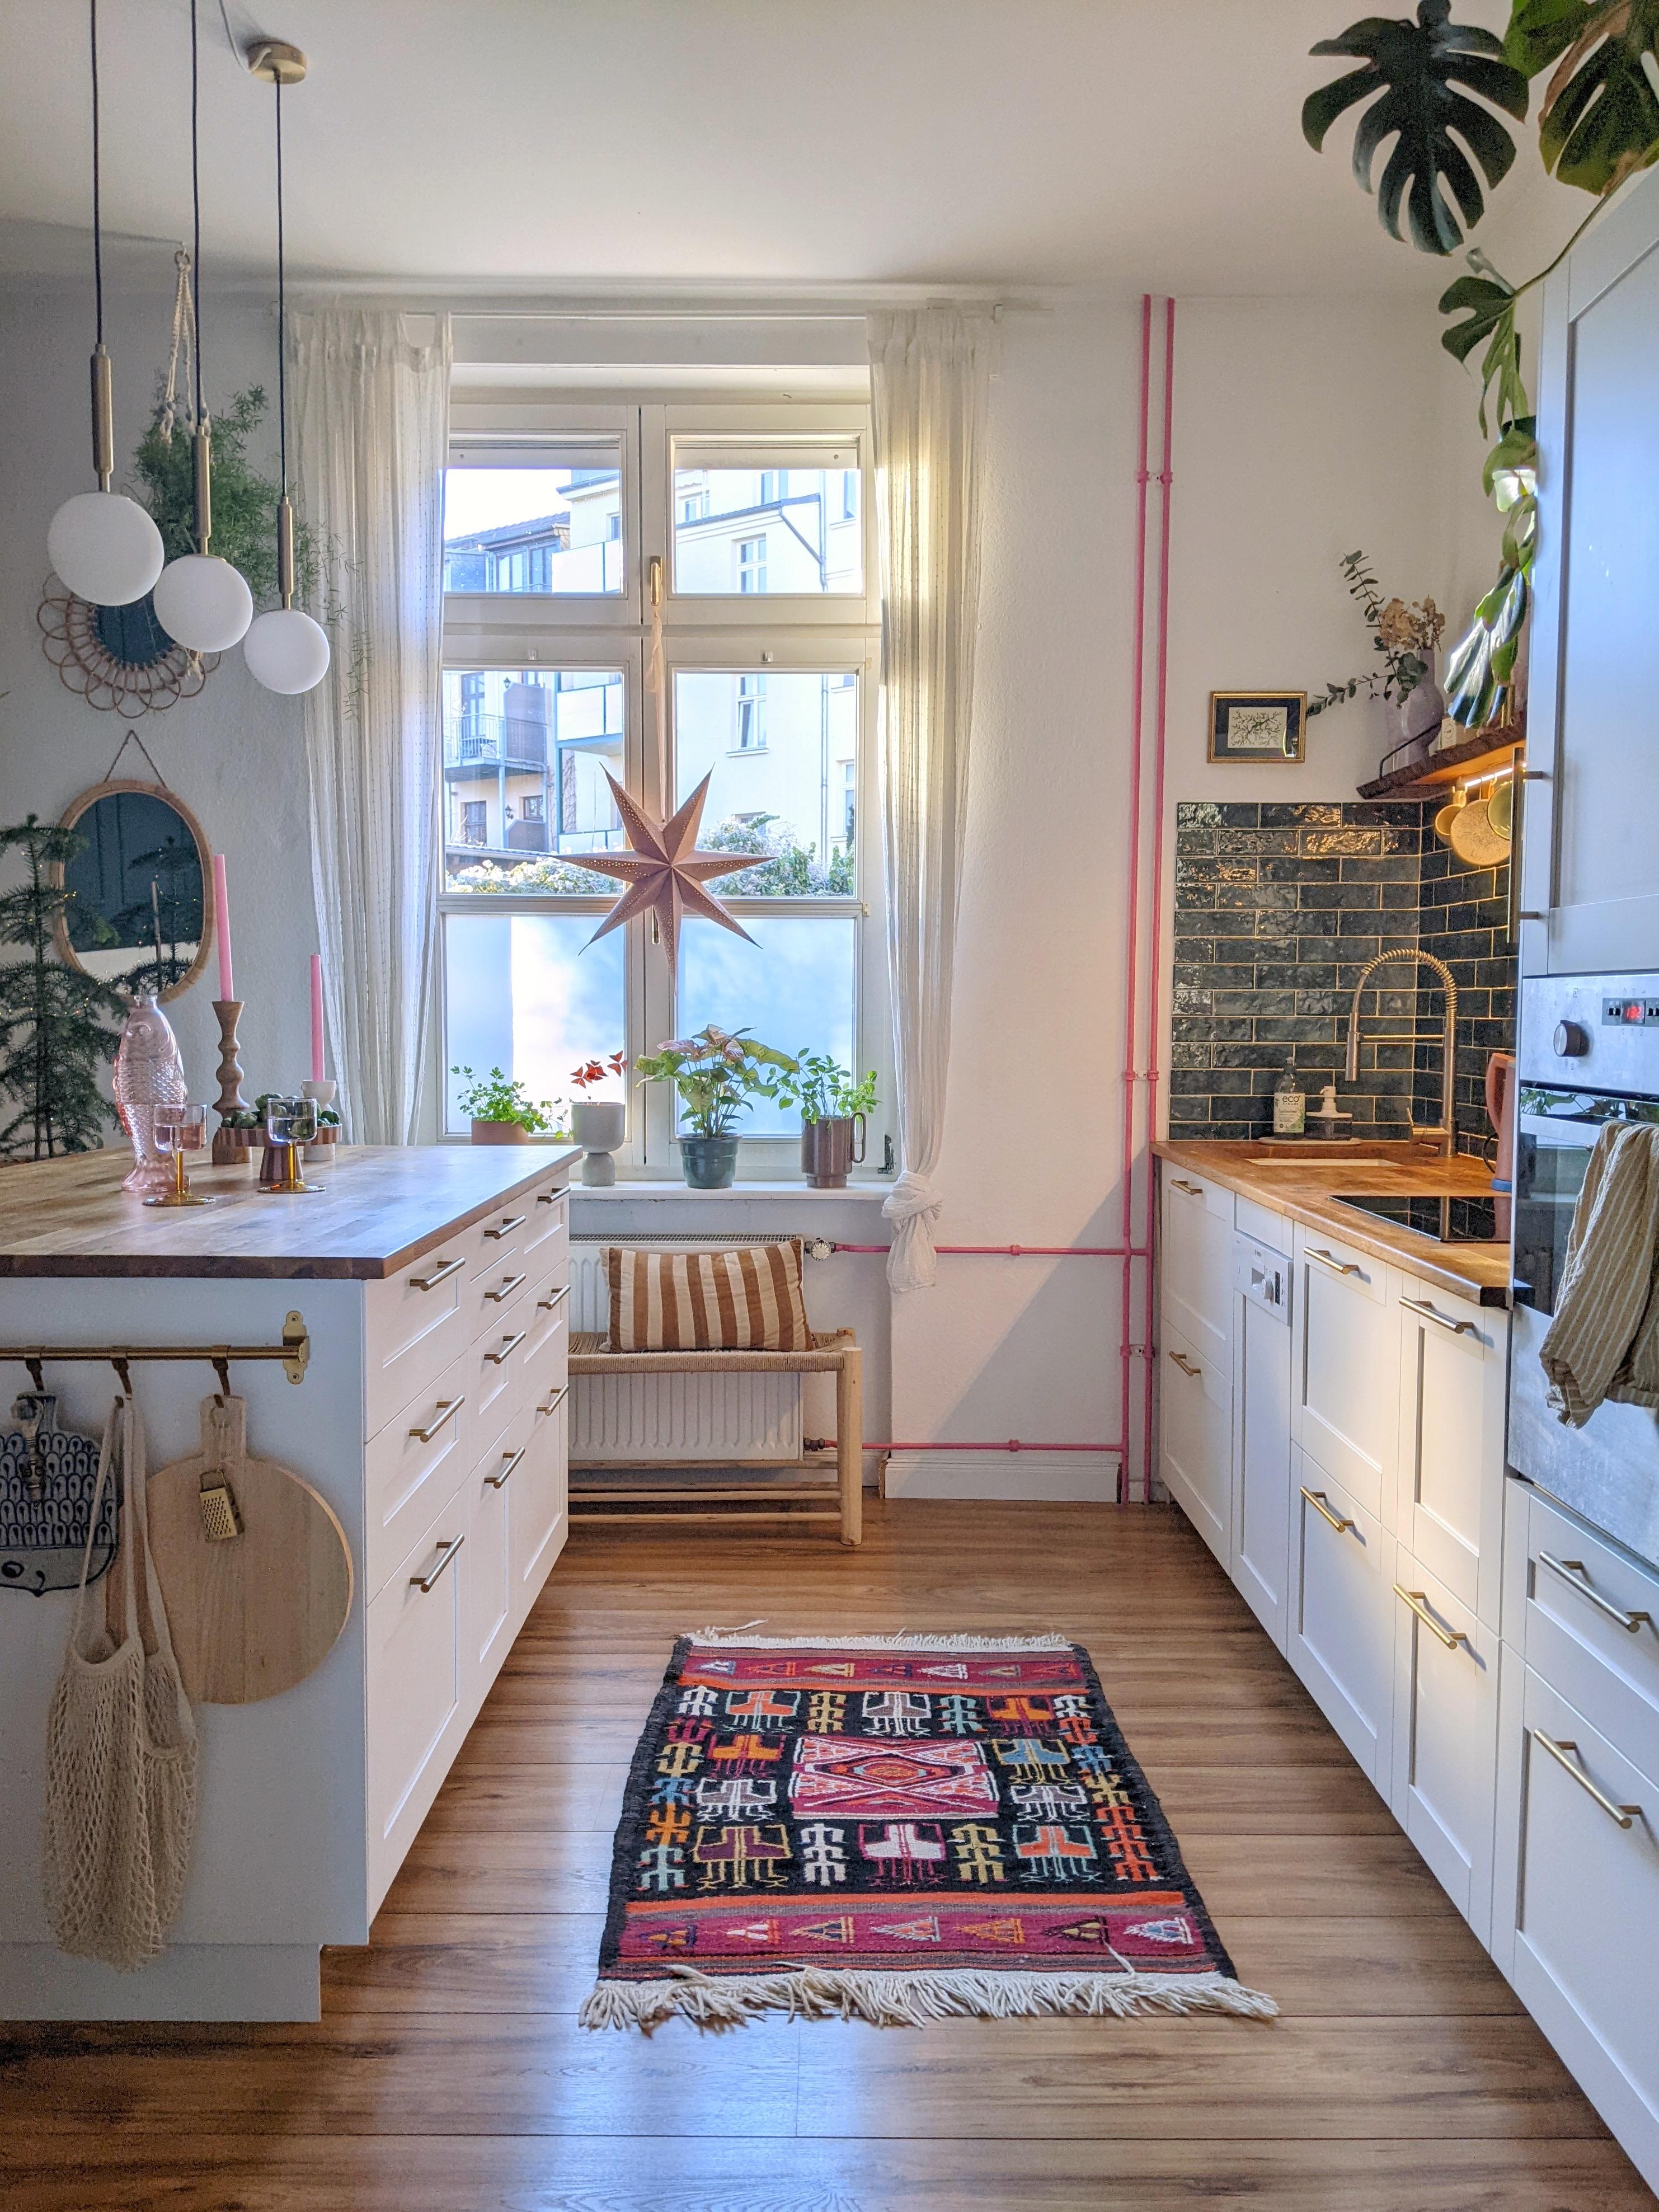 Neuer Blickwinkel in unsere Küche ✨ #küche #kücheninsel #fliesenspiegel #heizungsrohre